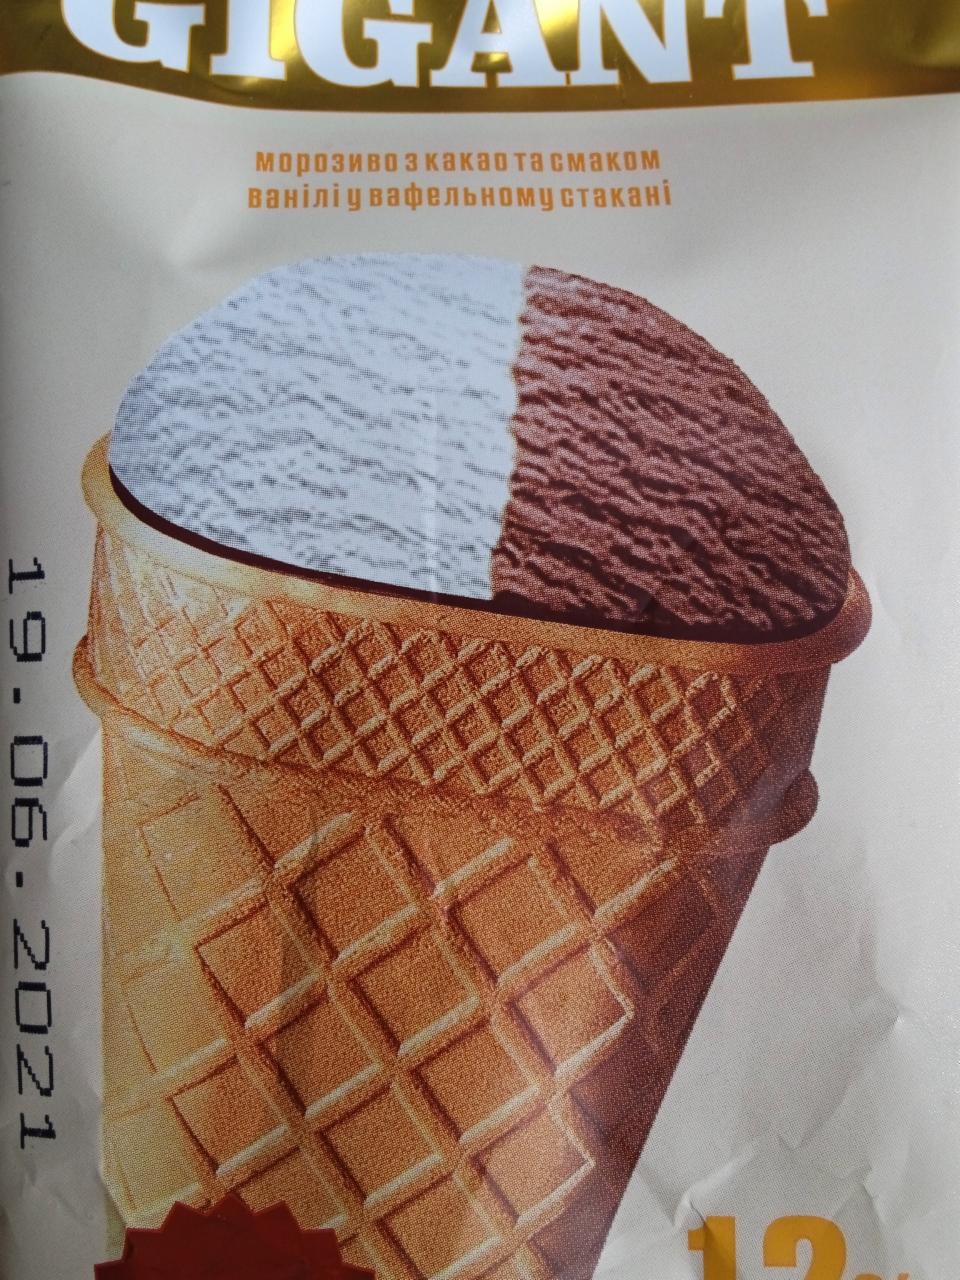 Фото - Морозиво з какао та смаком ванілі у вафельному стакані Gigant